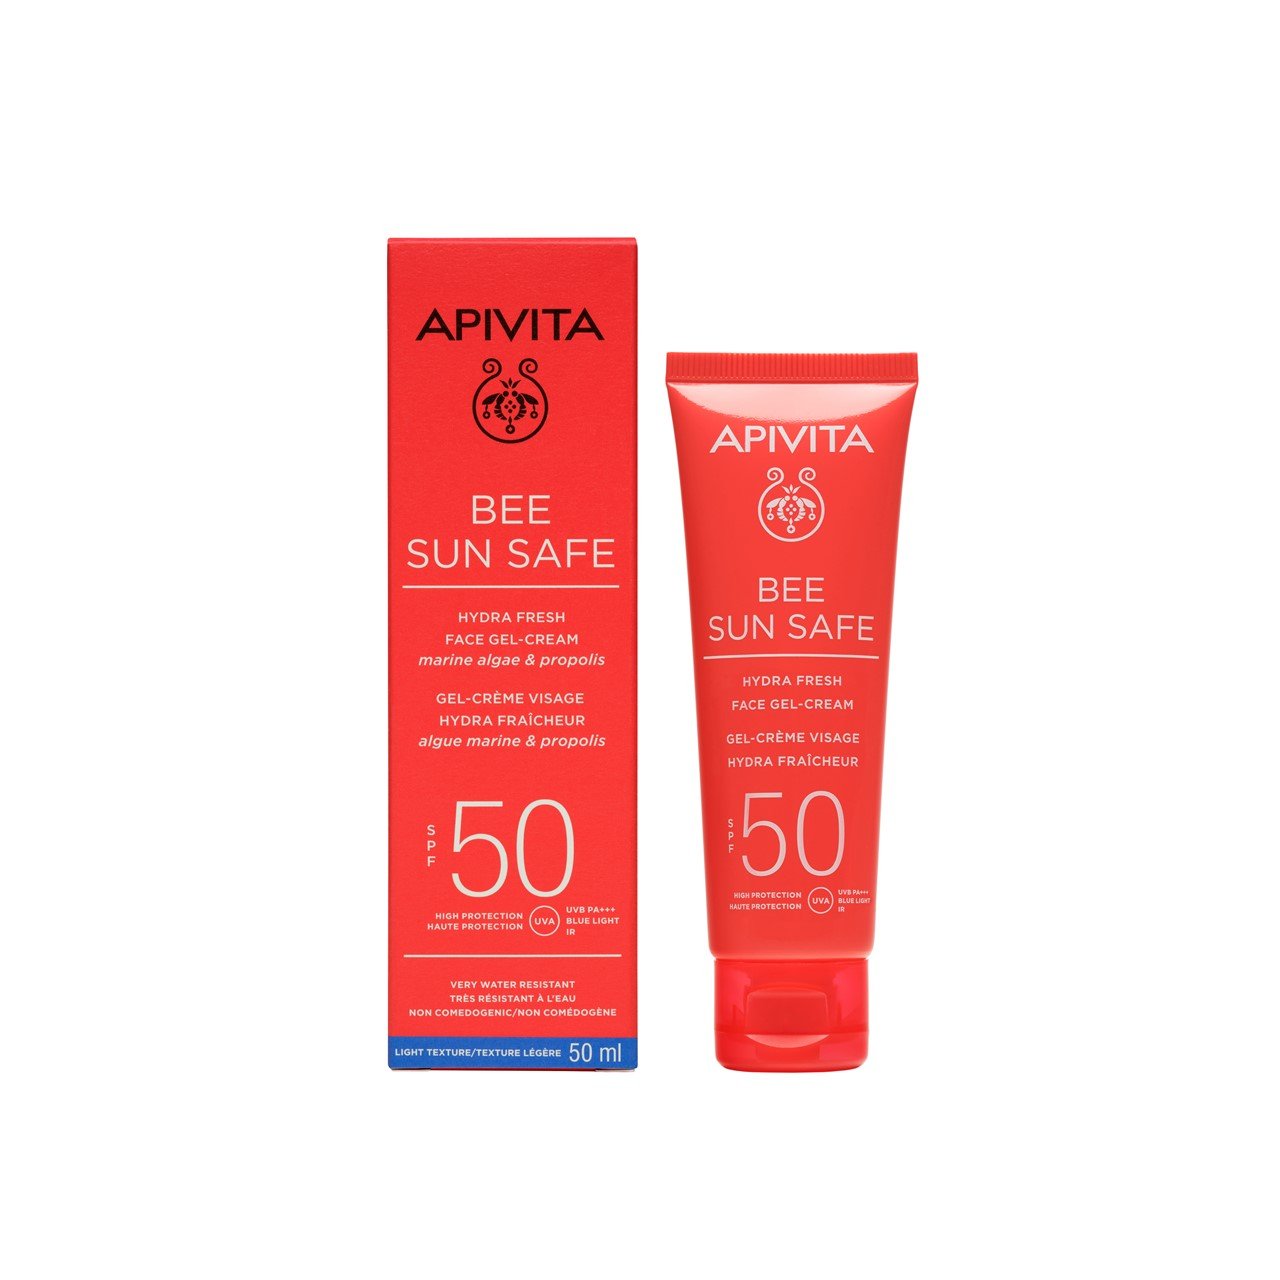 APIVITA Bee Sun Safe Hydra Fresh Face Gel-Cream SPF50 50ml